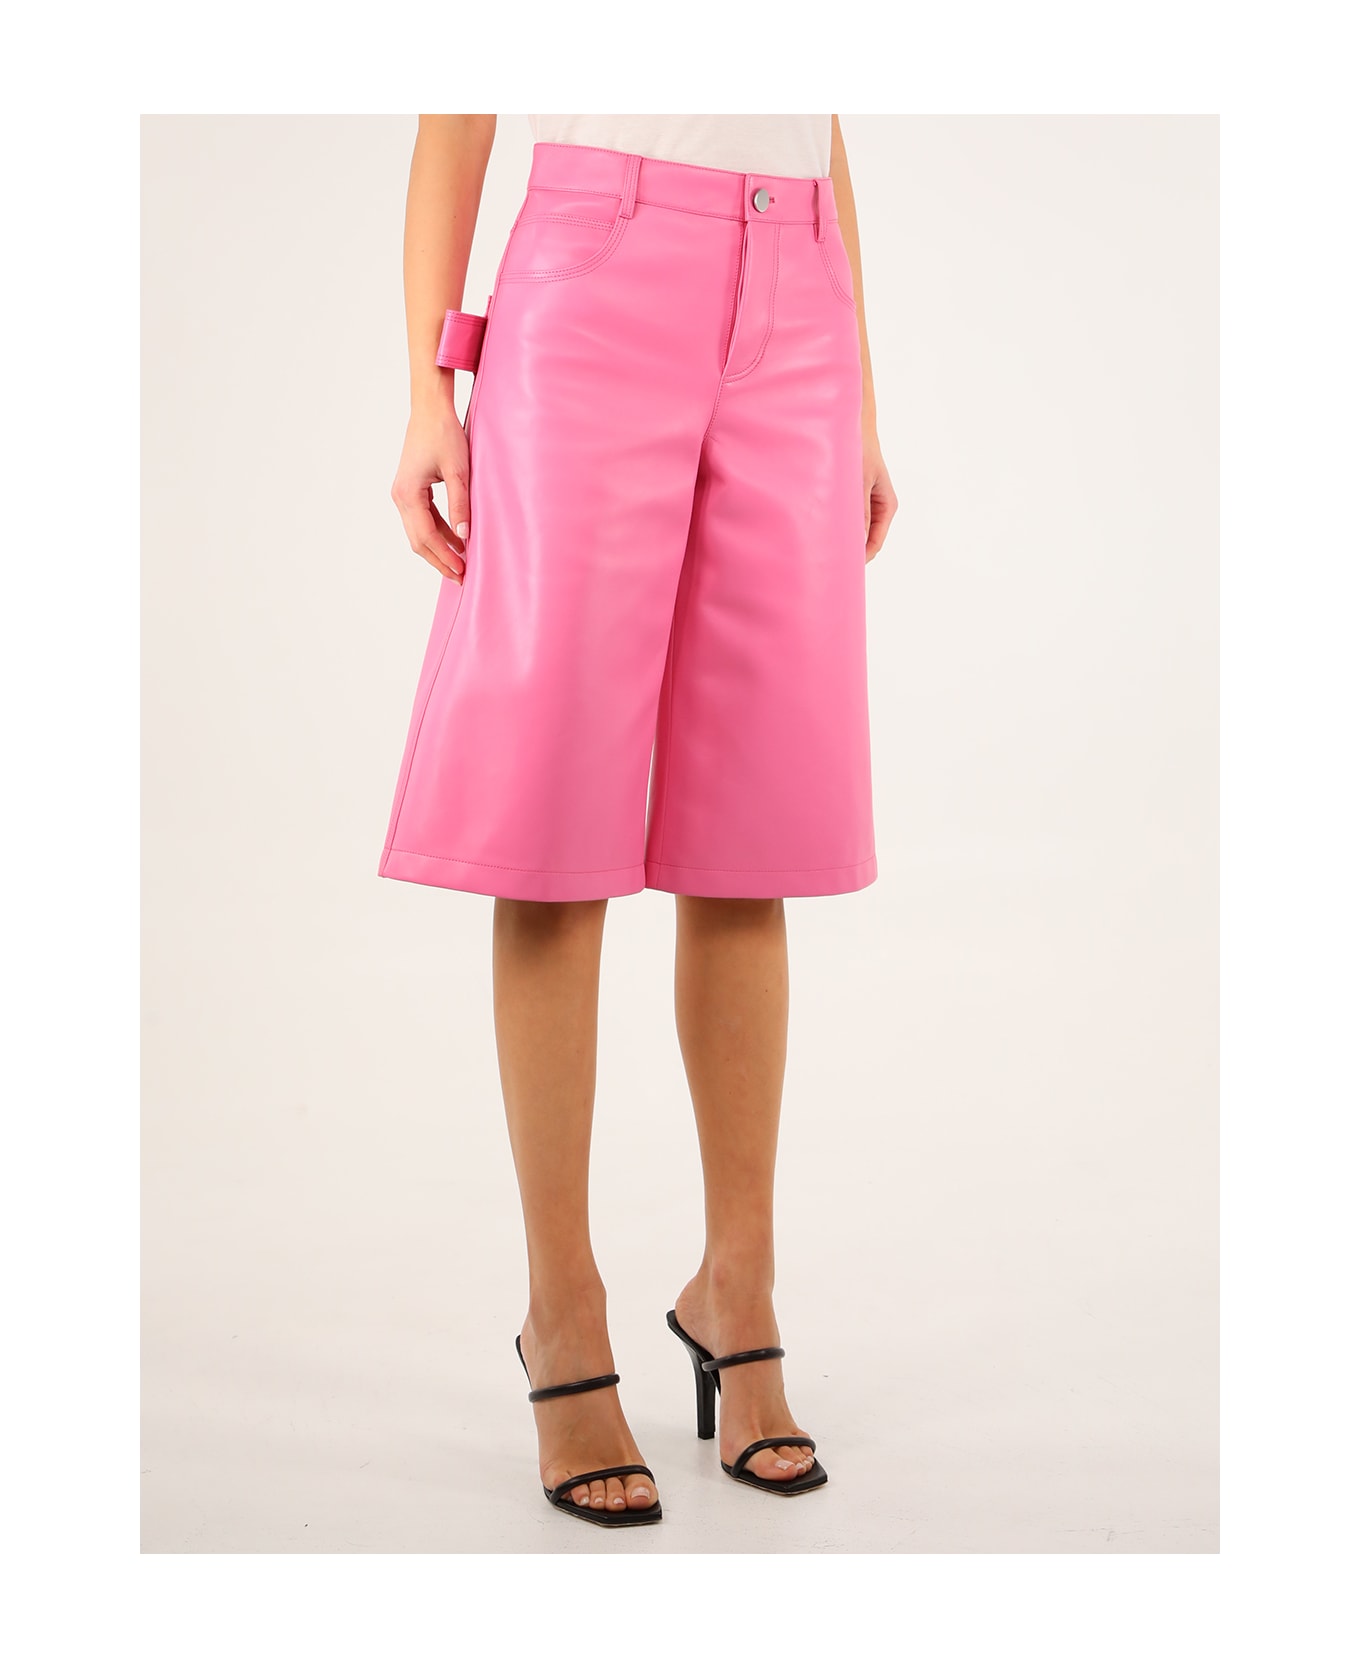 Bottega Veneta Pink Leather Bermuda Shorts - Pink